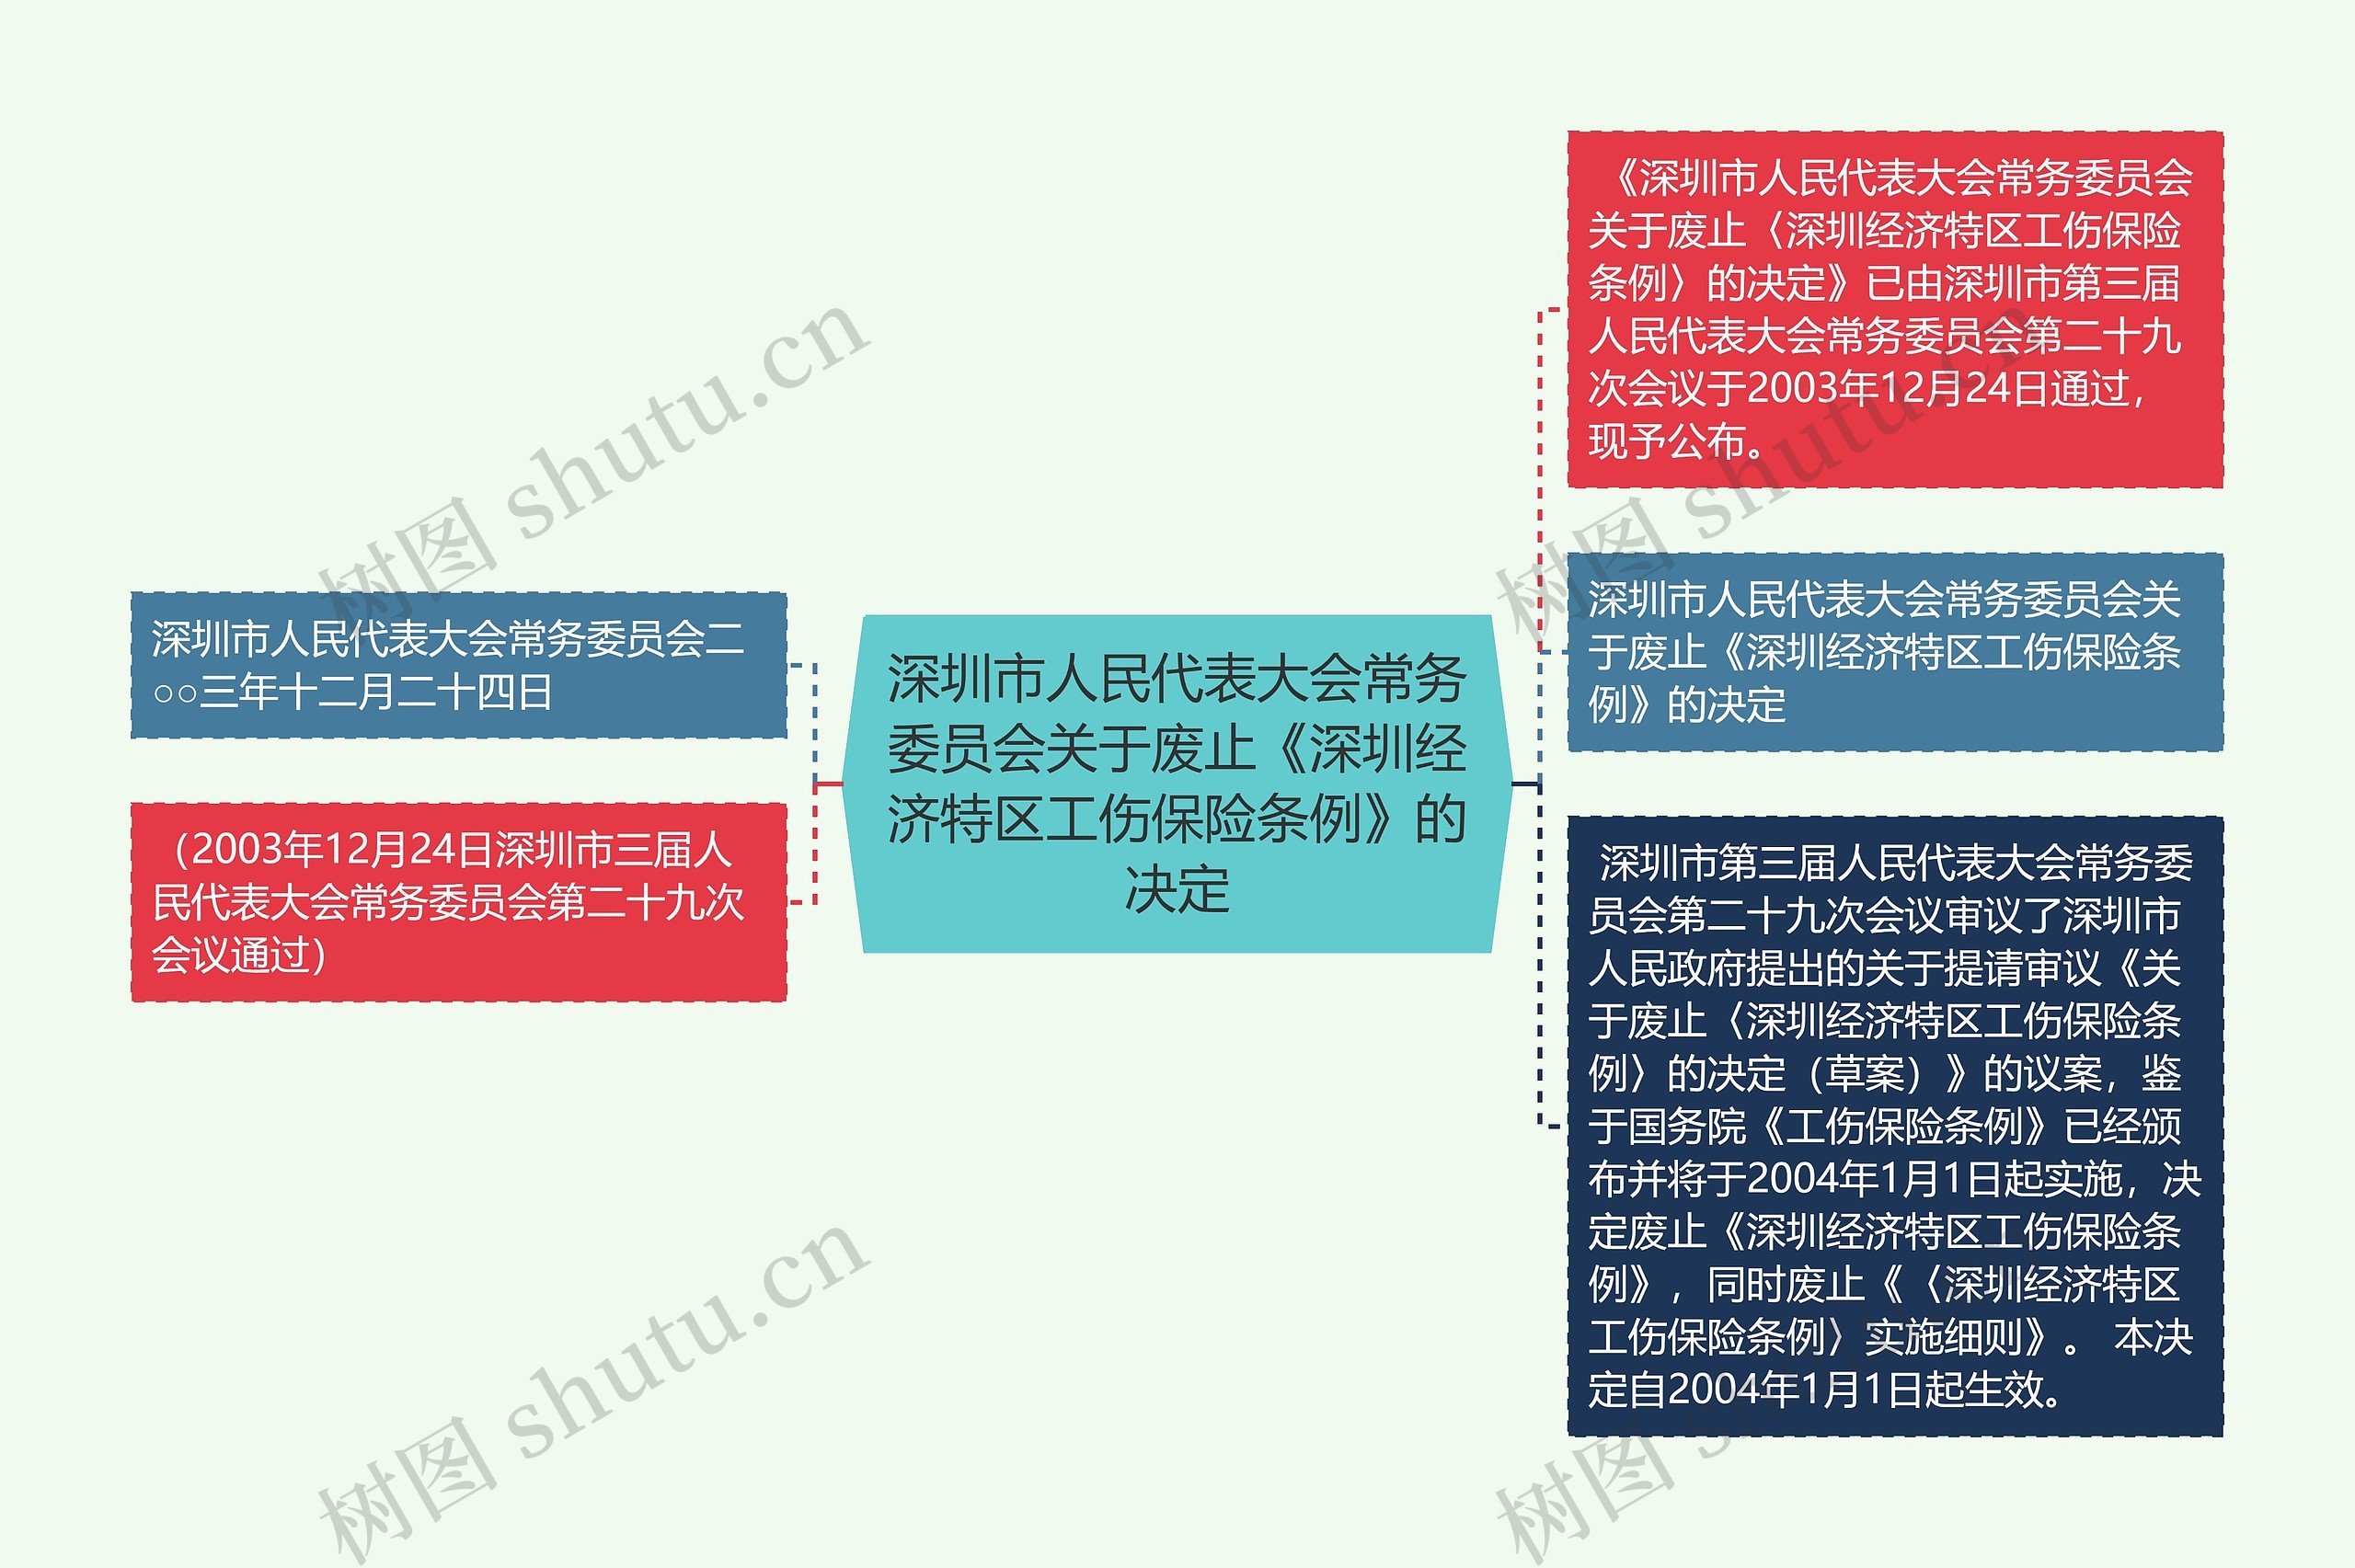 深圳市人民代表大会常务委员会关于废止《深圳经济特区工伤保险条例》的决定